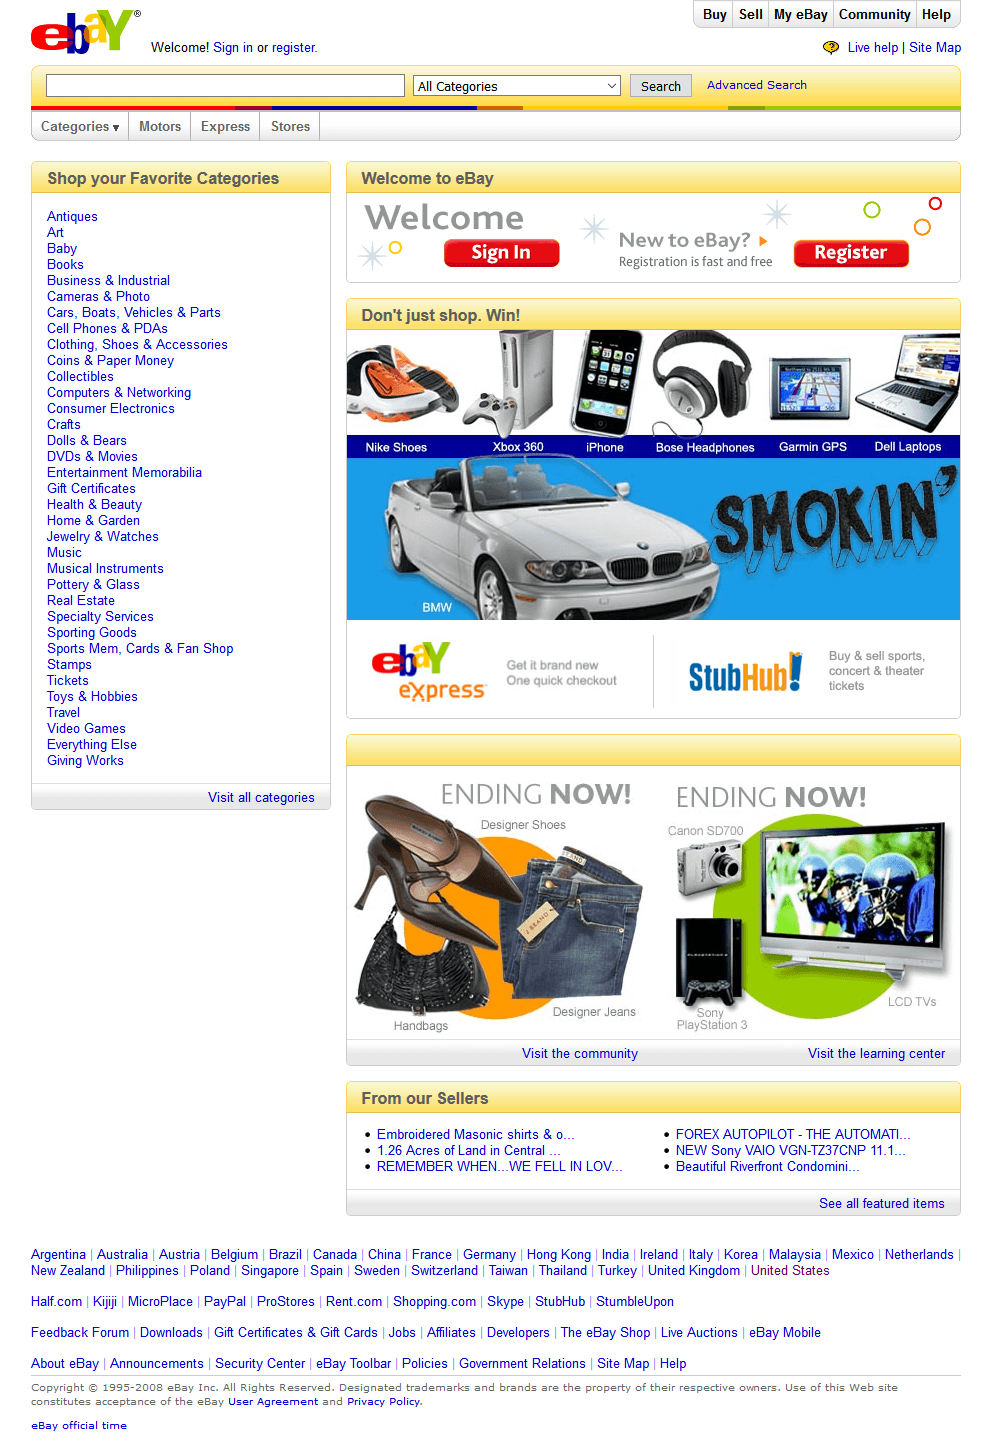 eBay in 2008